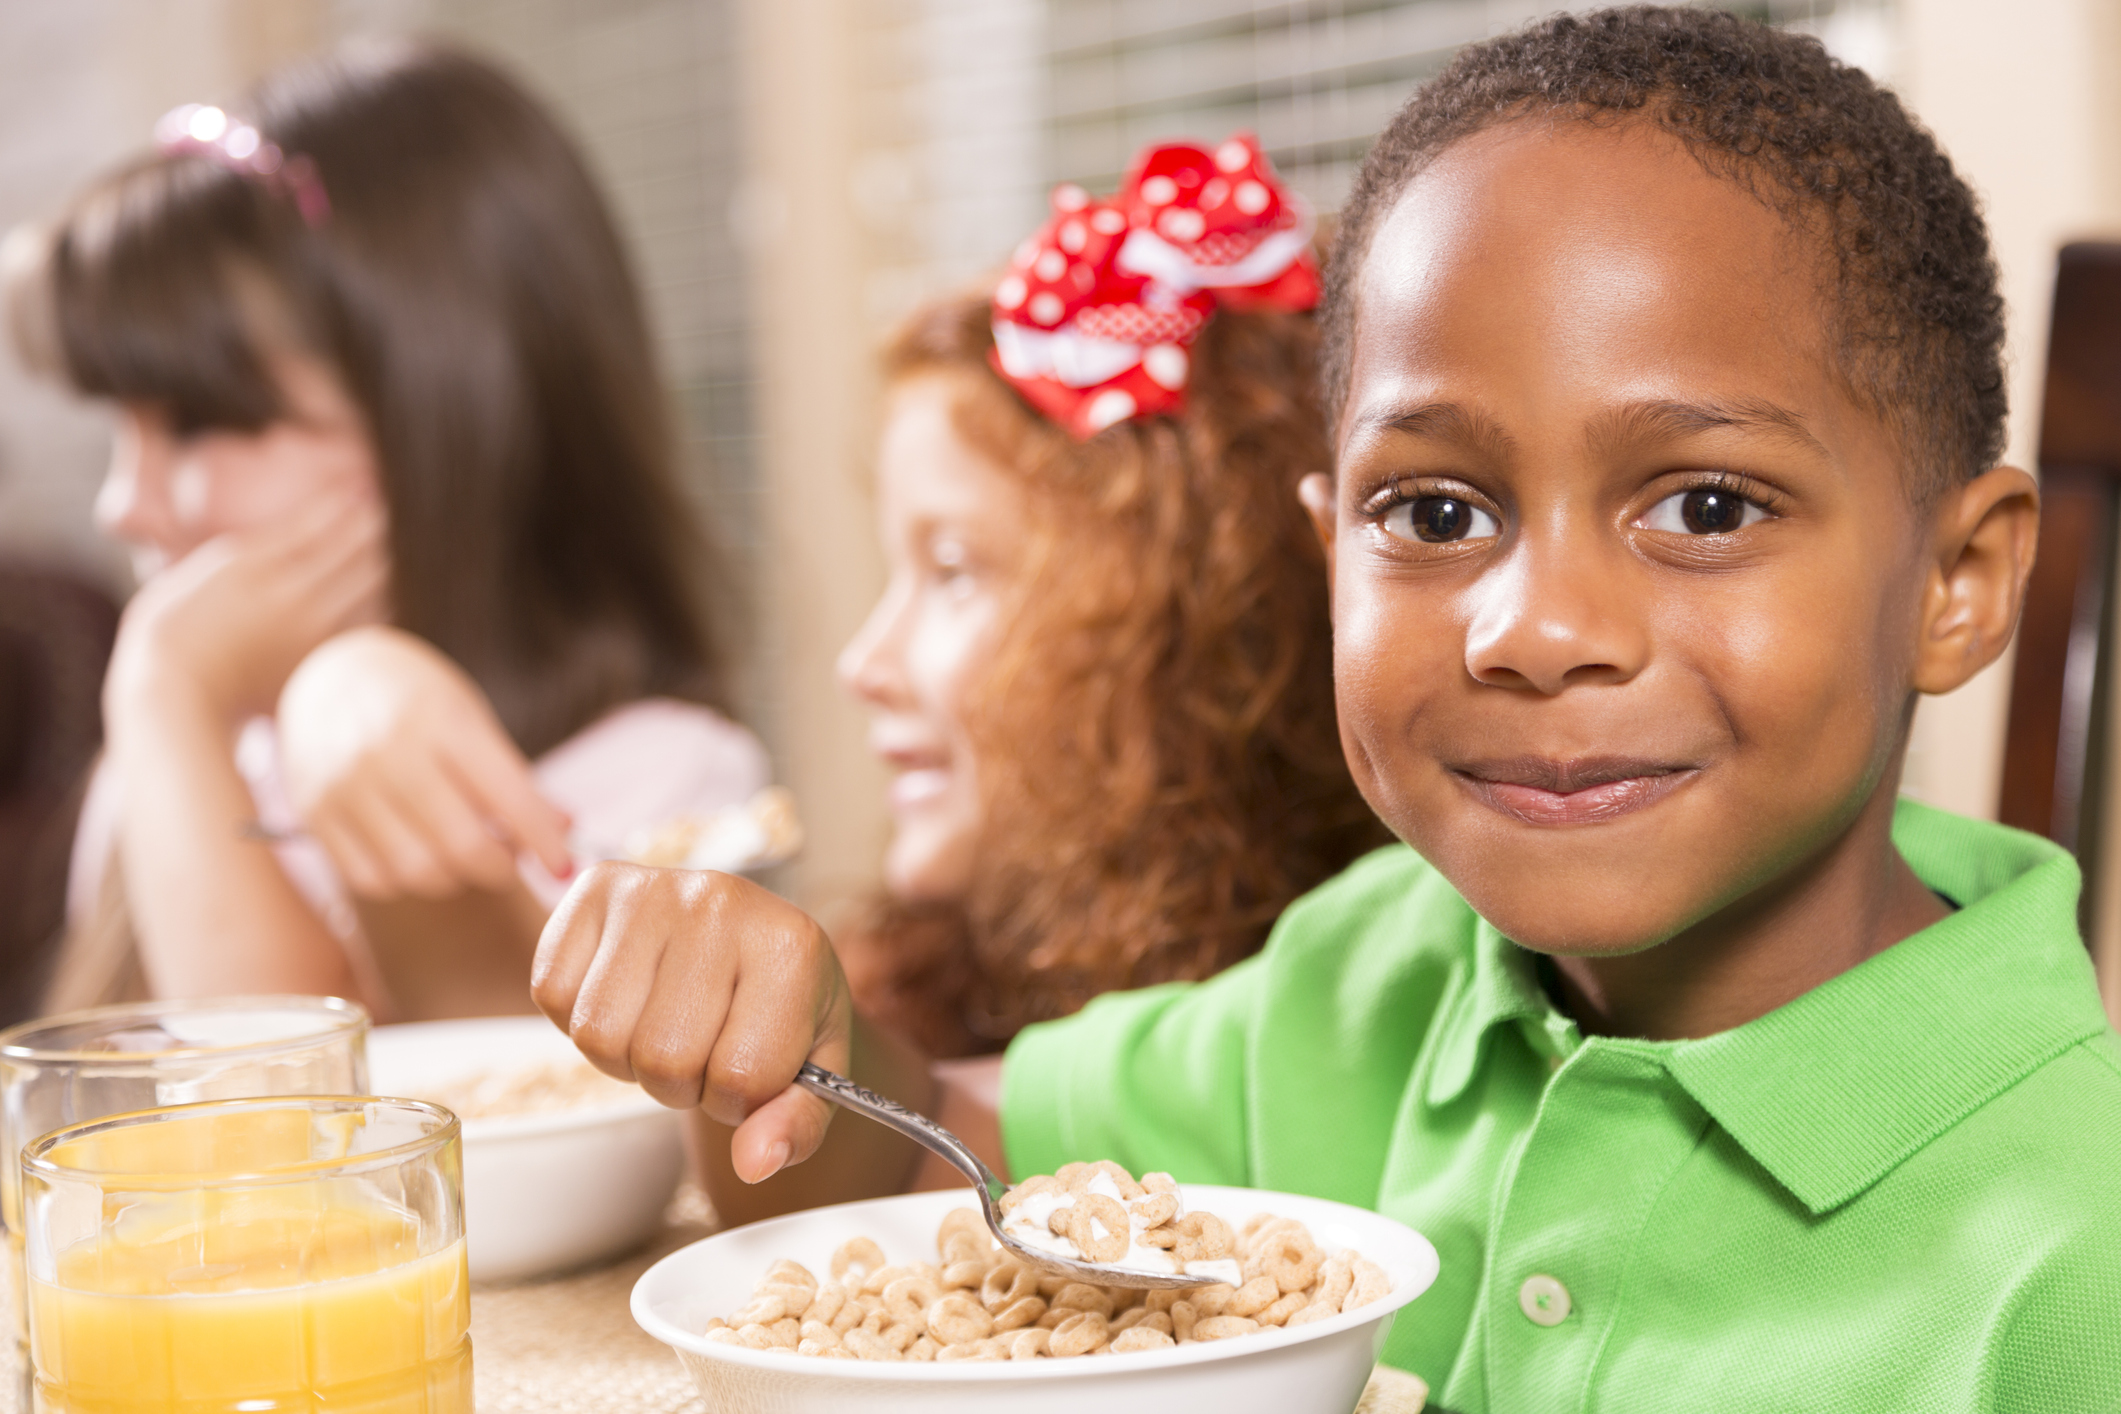 children eating school breakfast